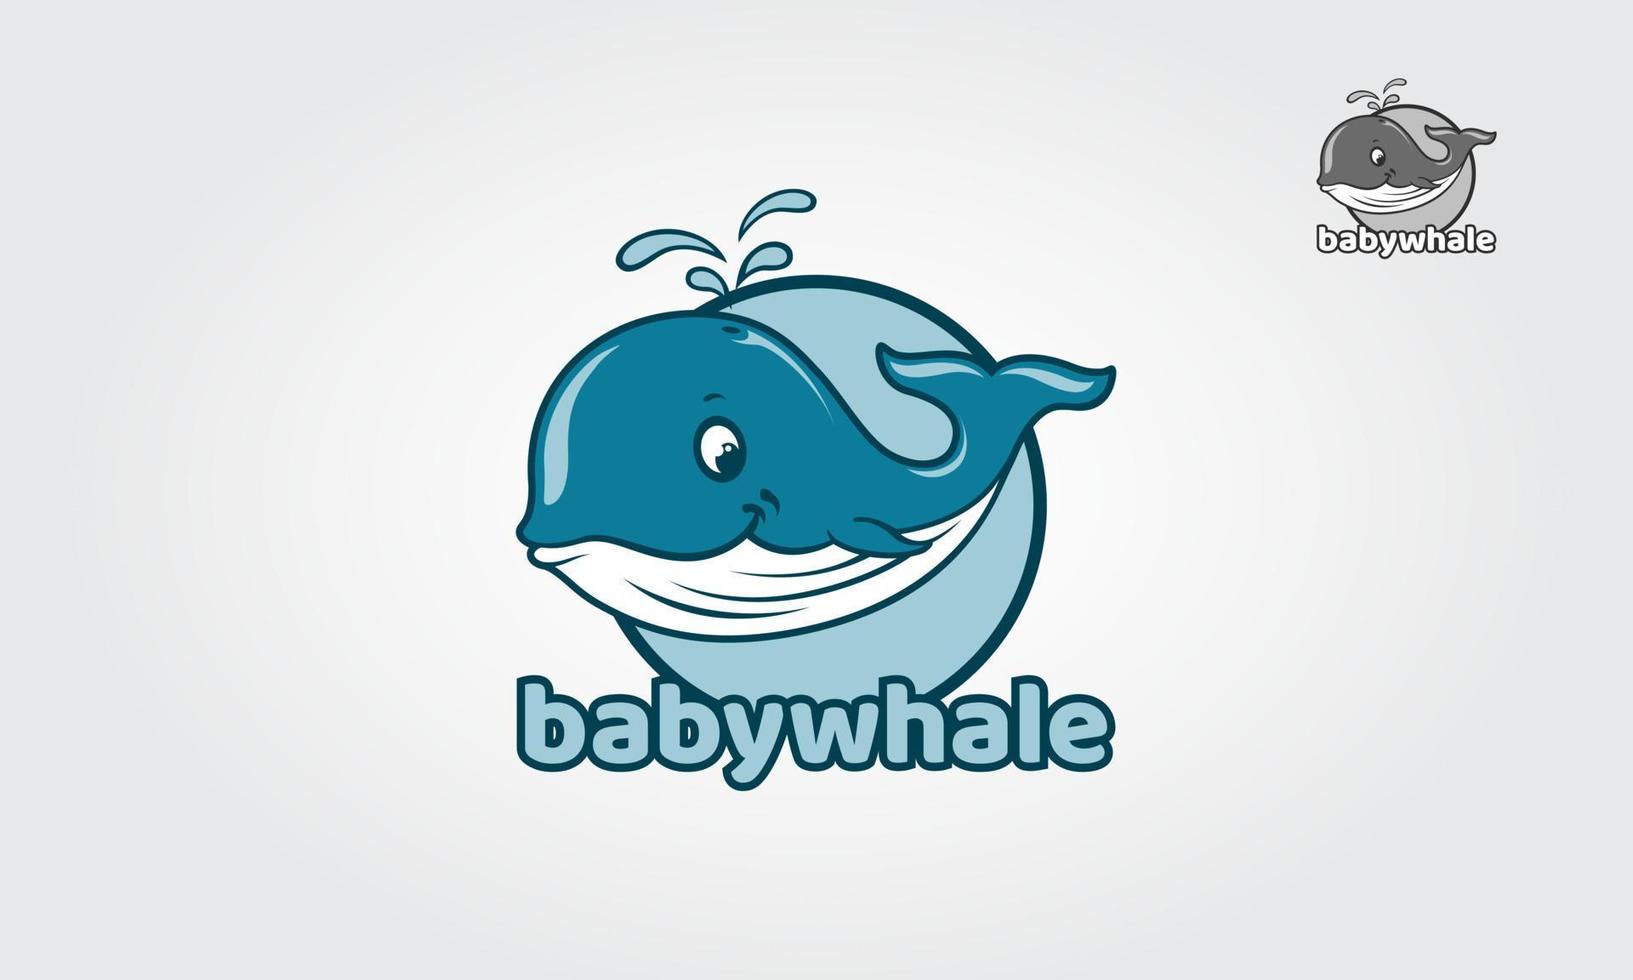 personnage de dessin animé logo bébé baleine. personnage de dessin animé avec un style amusant, peut rendre votre mascotte d'en-tête ou de logo plus amusante et ludique. vous pouvez utiliser ce logo pour n'importe quelle entreprise. vecteur